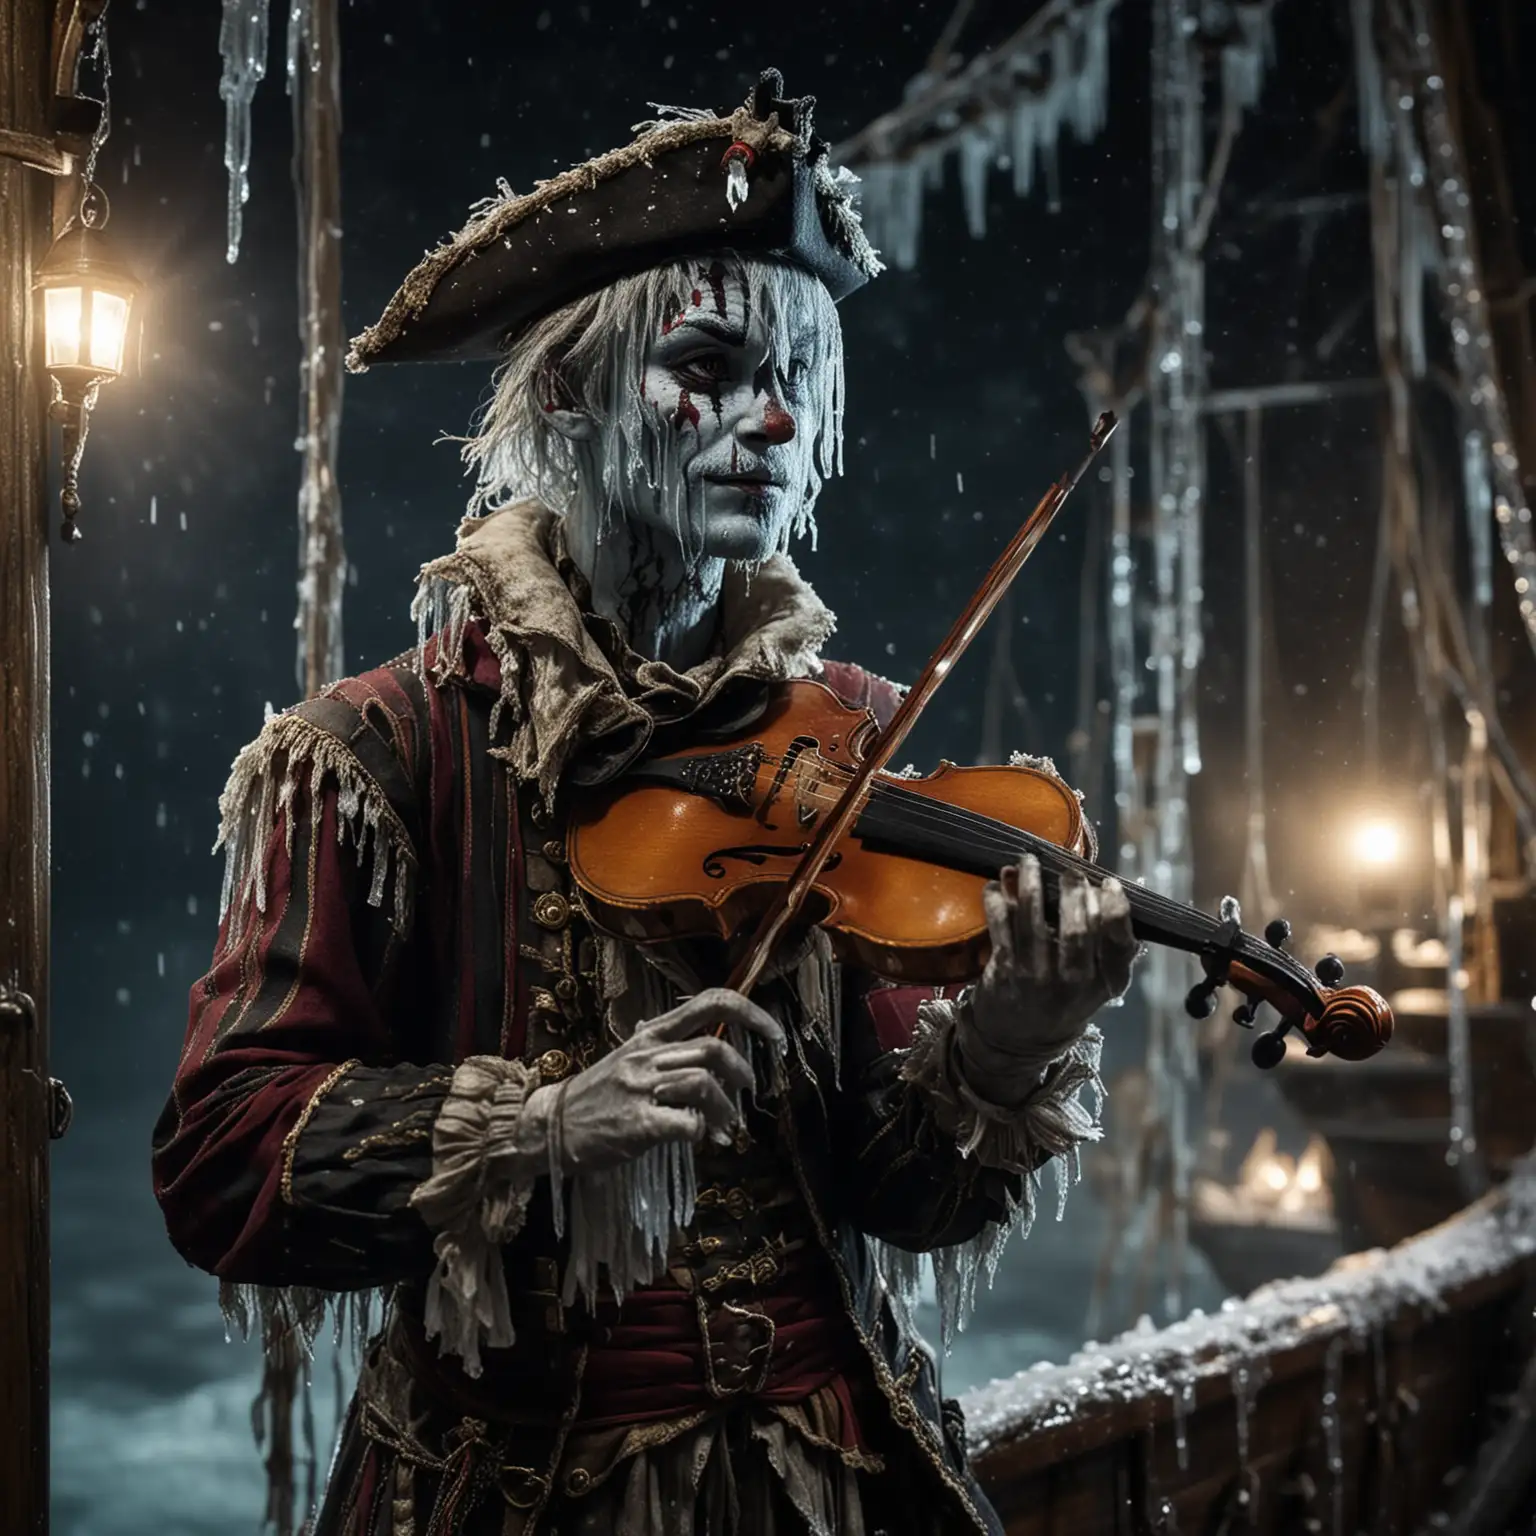 Ein eingefrorener Harlekin auf einem Piratenschiff bei Nacht. Seine Kleidung und sein Gesicht sind eingefroren. Es ist sehr kalt. Eiszapfen. Der Harlekin spielt Geige.